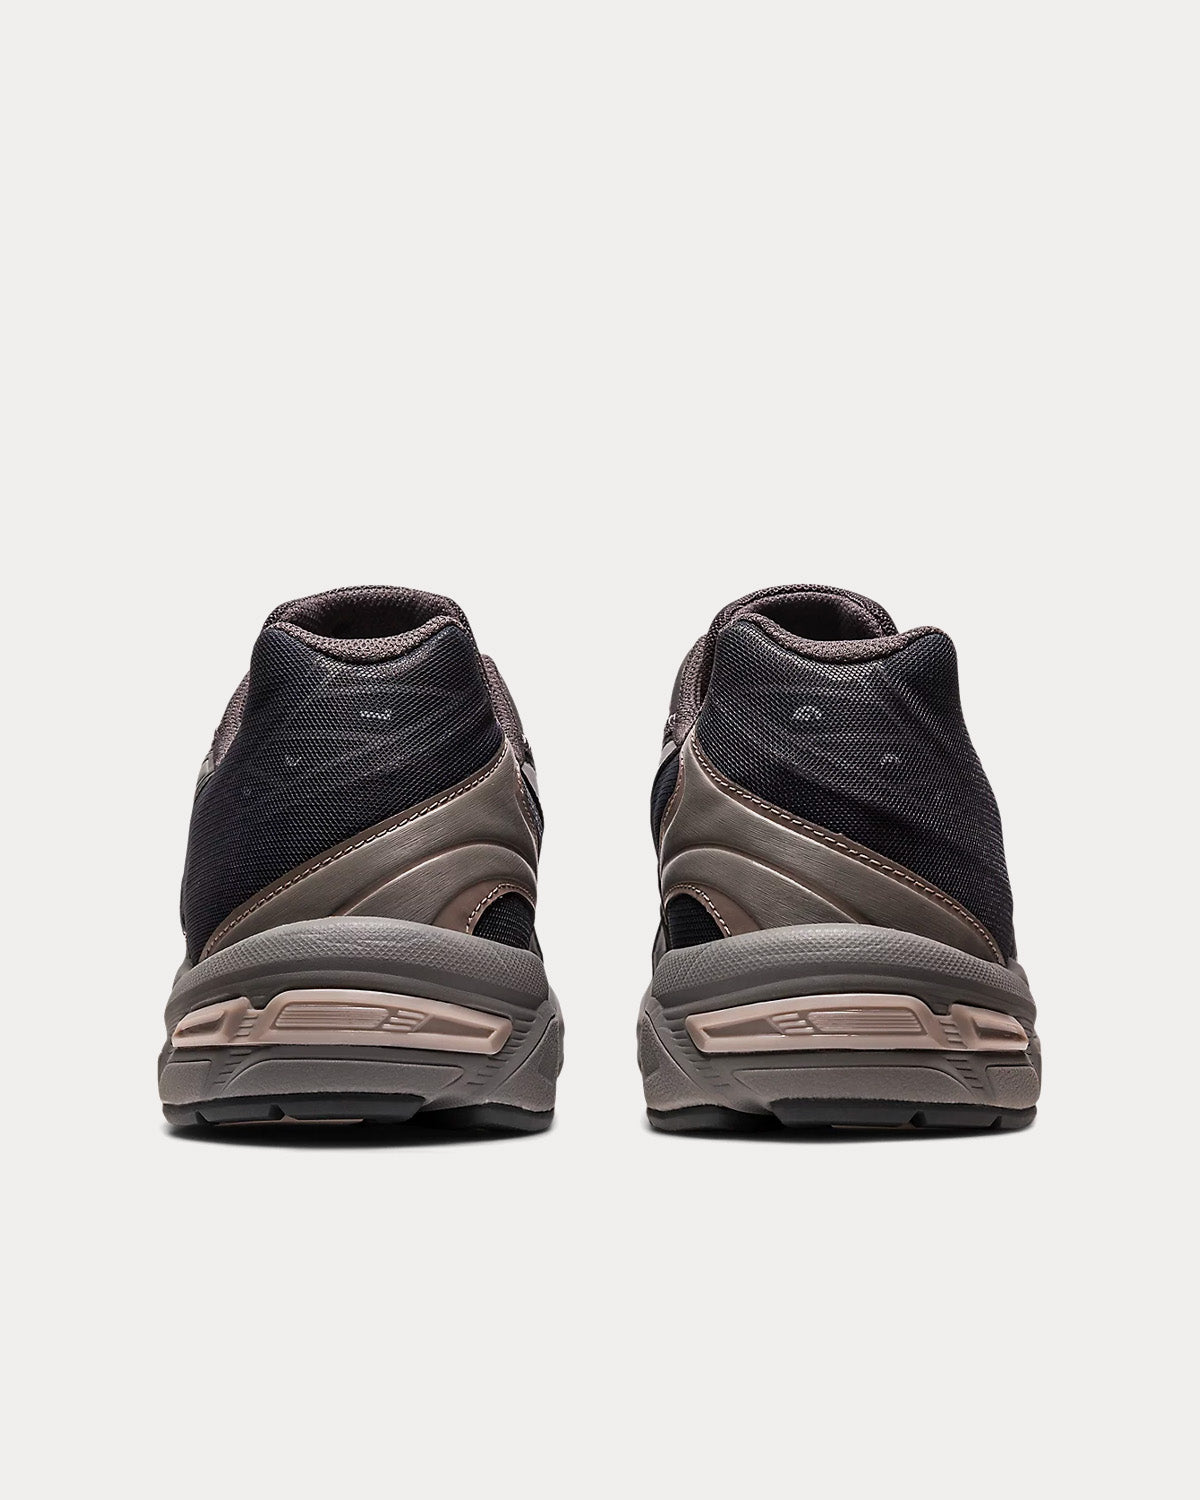 Asics Gel-1130 RE Obsidian Grey / Obsidian Grey Low Top Sneakers 